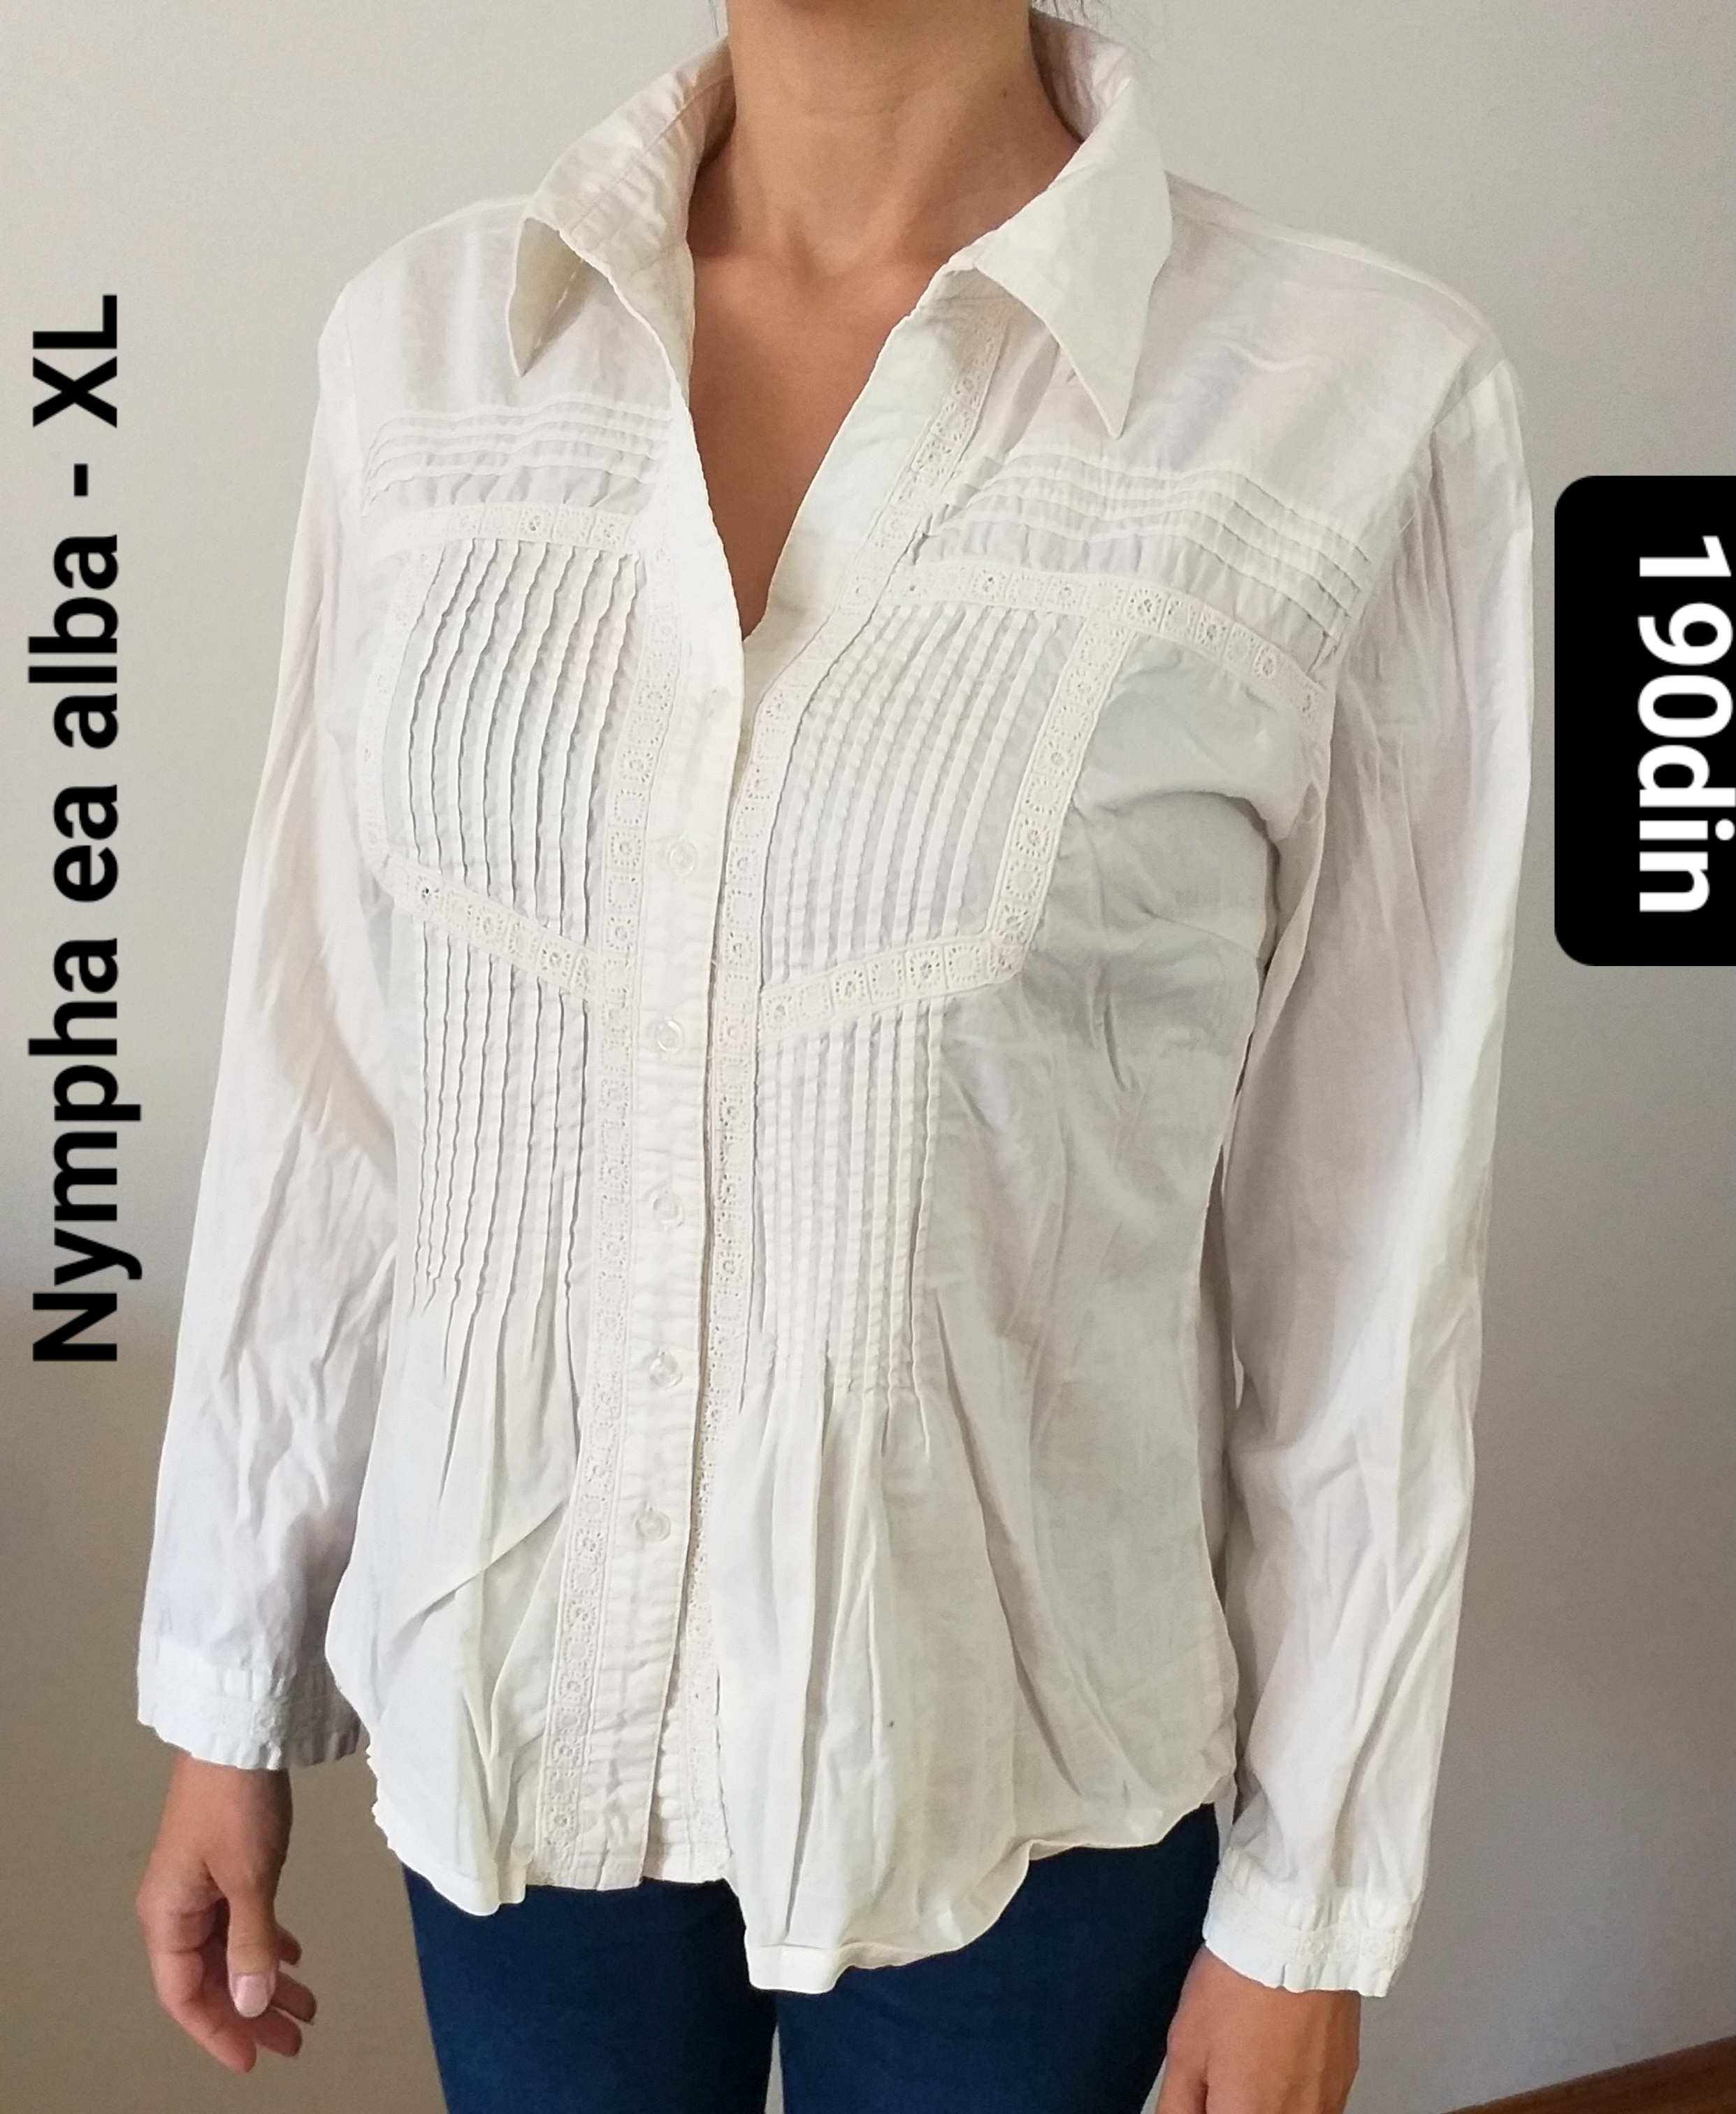 Nympha ženska košulja bela dug rukav XL/42